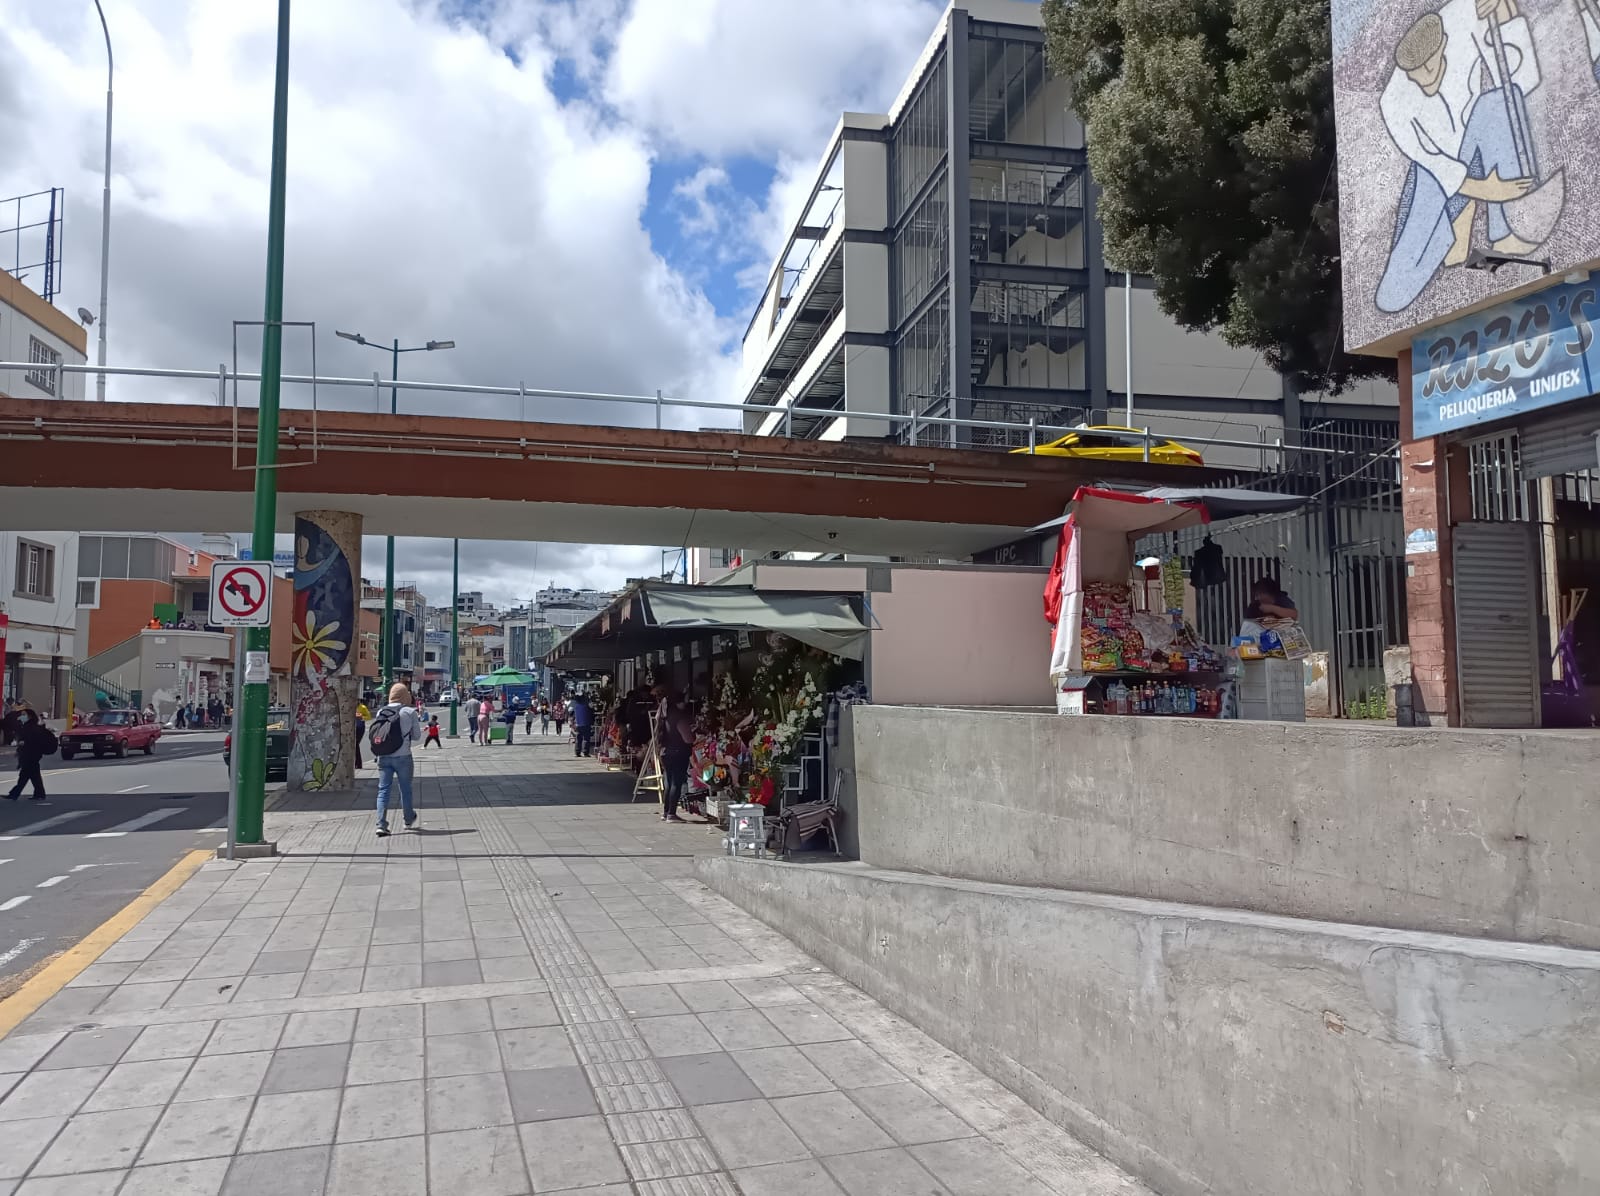 Las instalaciones que están tapadas con el Boulevard de las Flores suelen permanecer vacías, según comerciantes del sector.